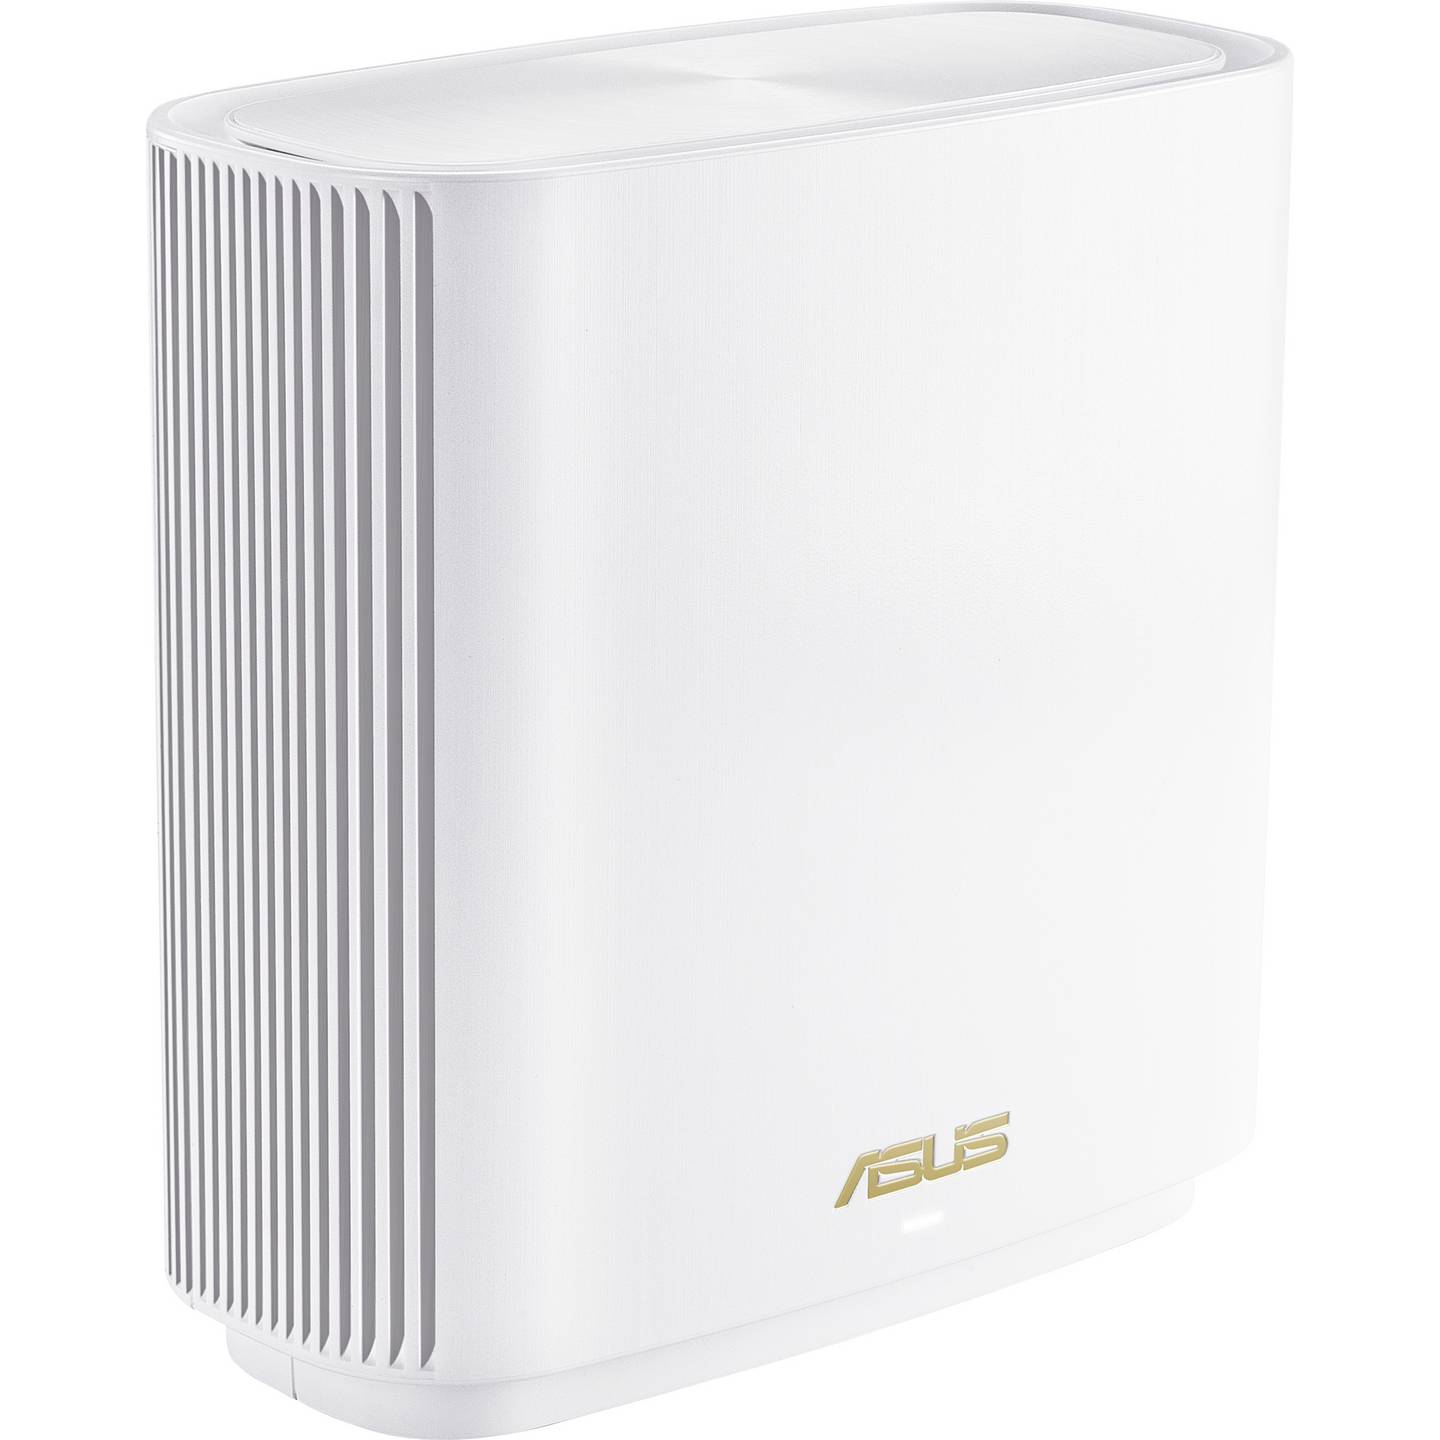 Advertentiefoto van een ASUS XT9, een wit, vierkant mesh wifi-systeem met een subtiel ASUS-logo aan de voorkant. Het apparaat staat tegen een witte achtergrond, wat het moderne ontwerp en de geavanceerde netwerkfunctionaliteit benadrukt.